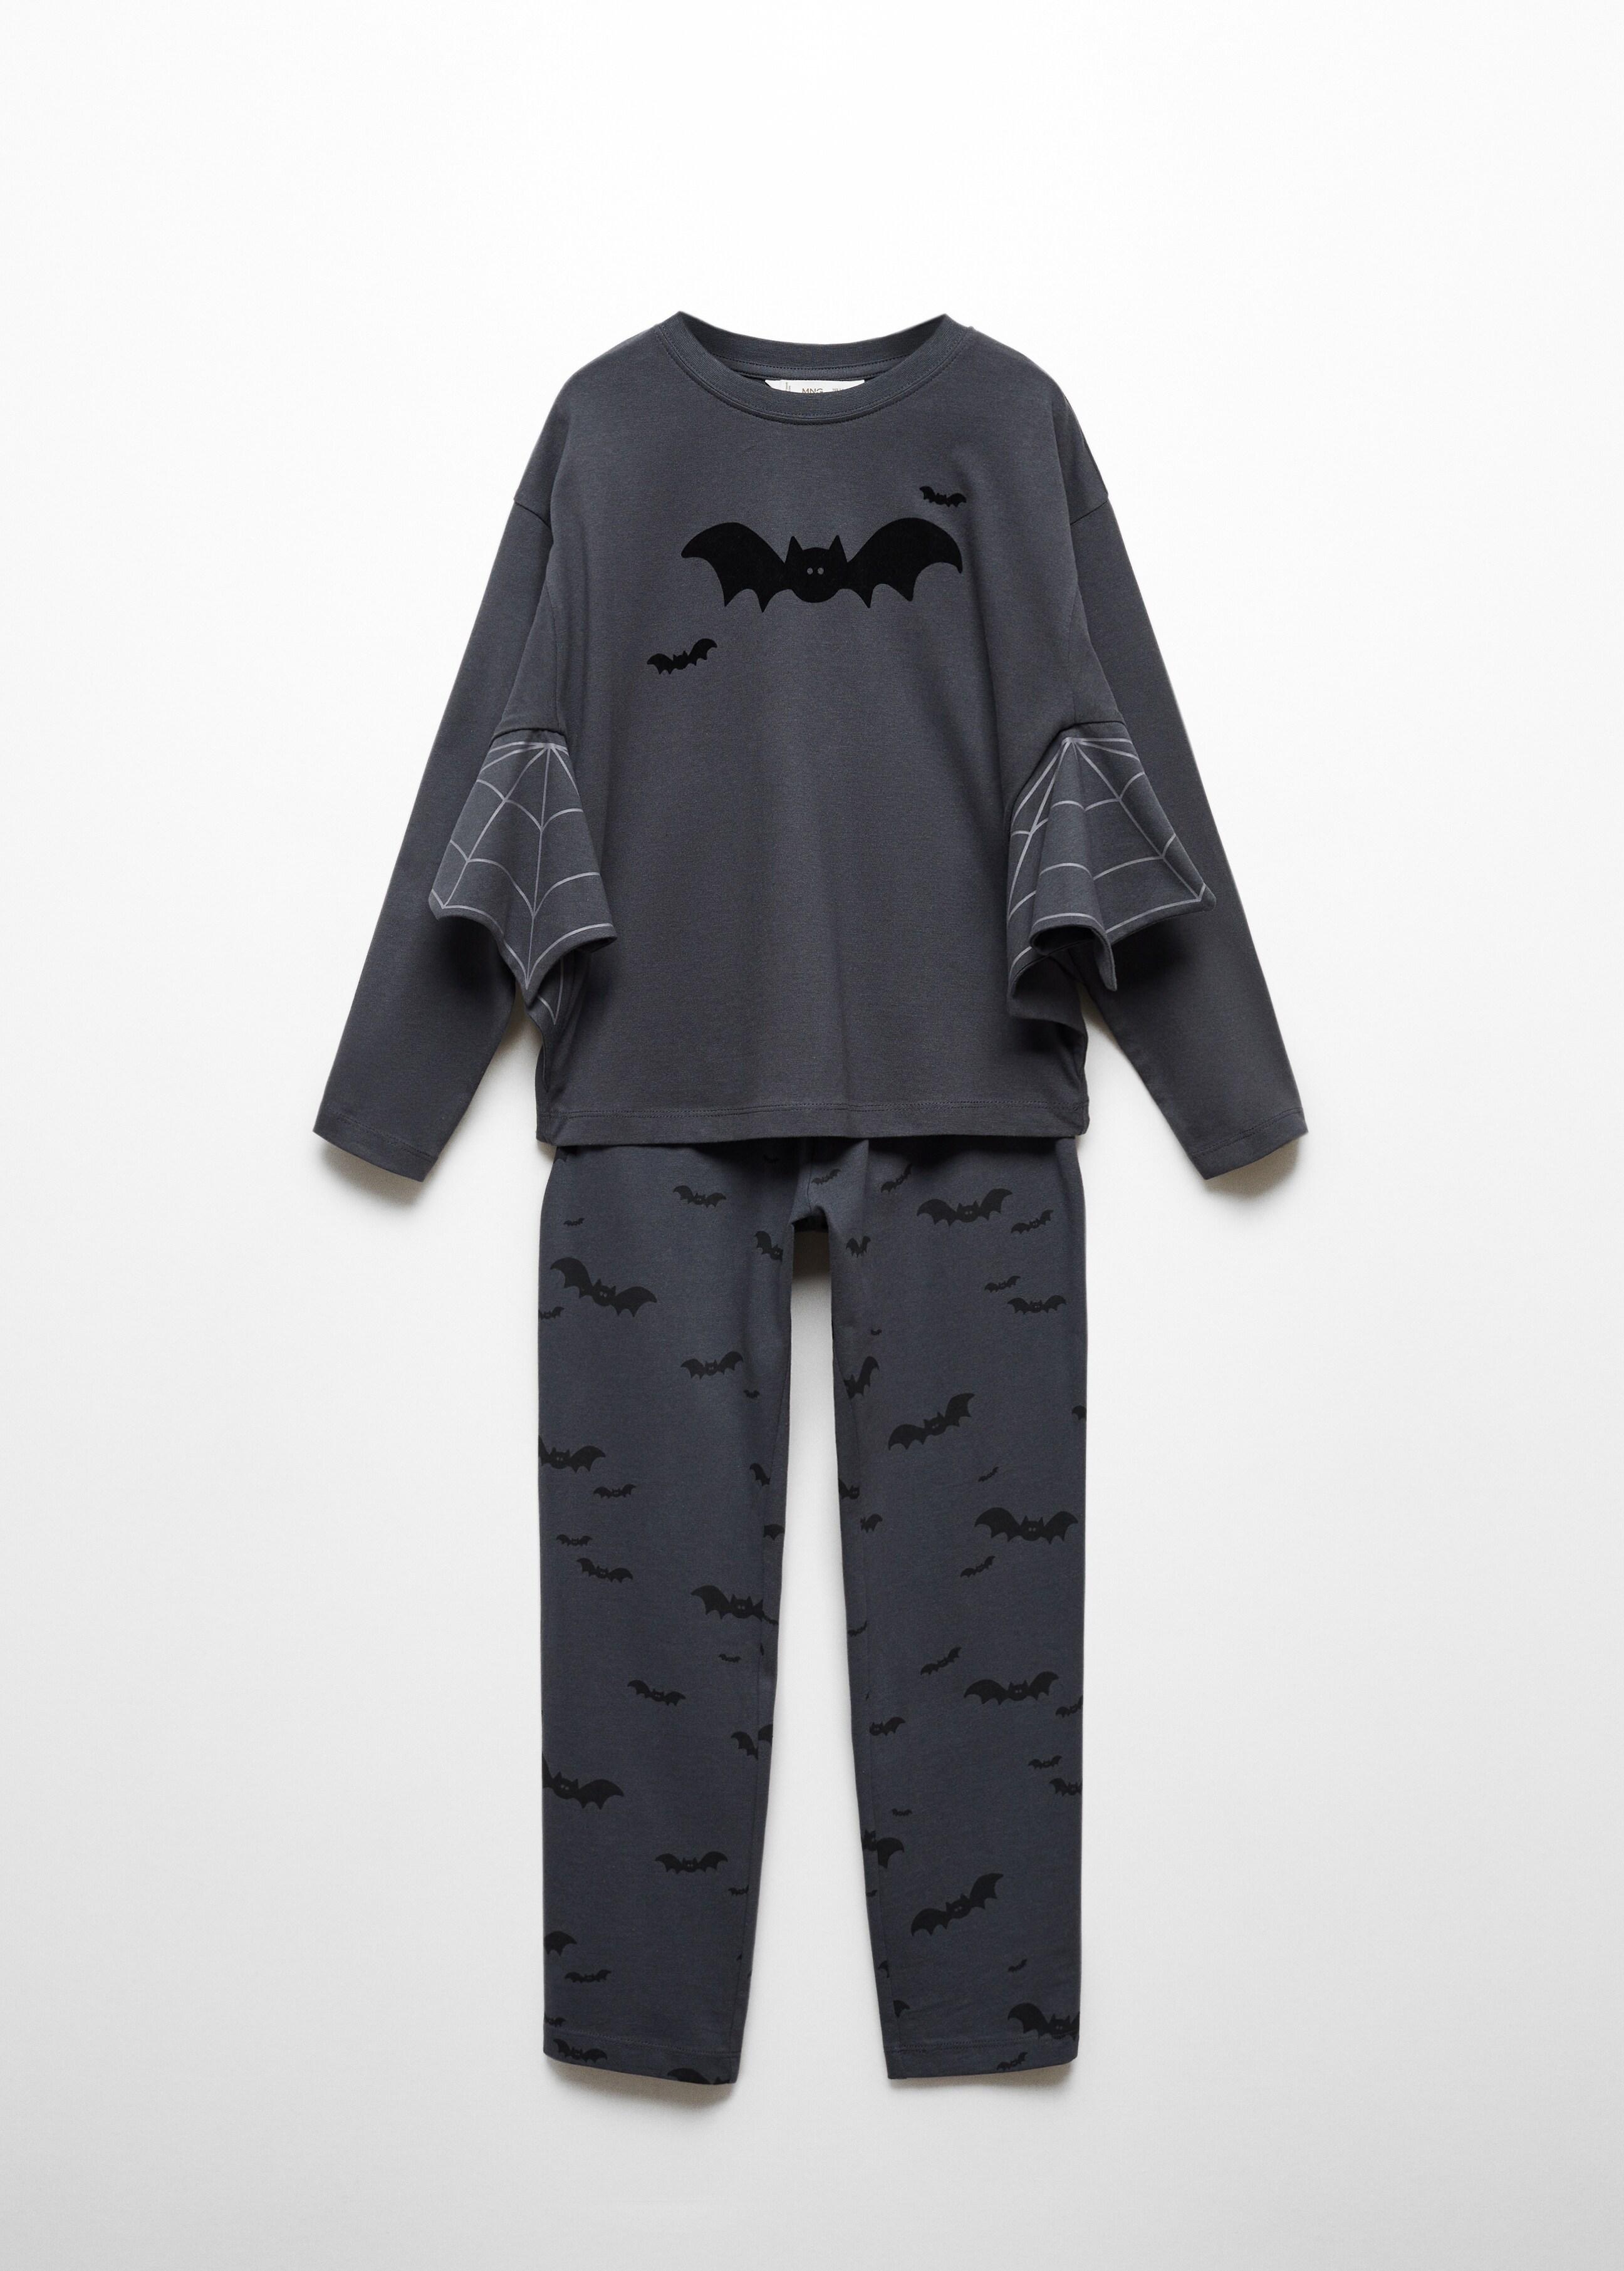 Long bat pyjamas - Article without model